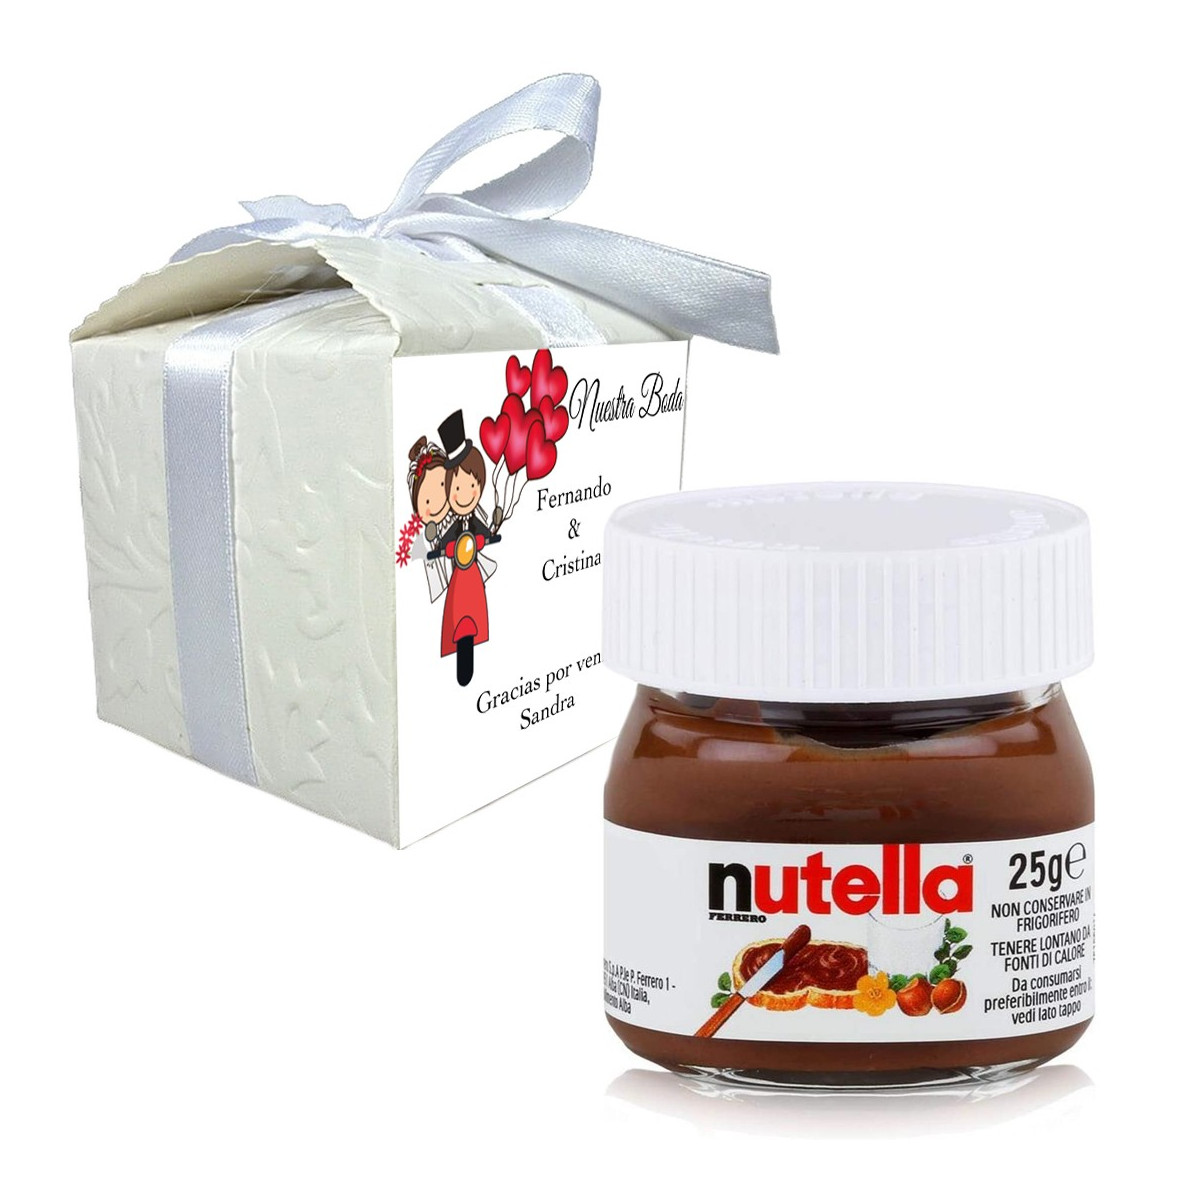 Nutella en caja de regalo personalizada con nombre de invitado y frase de agradecimiento